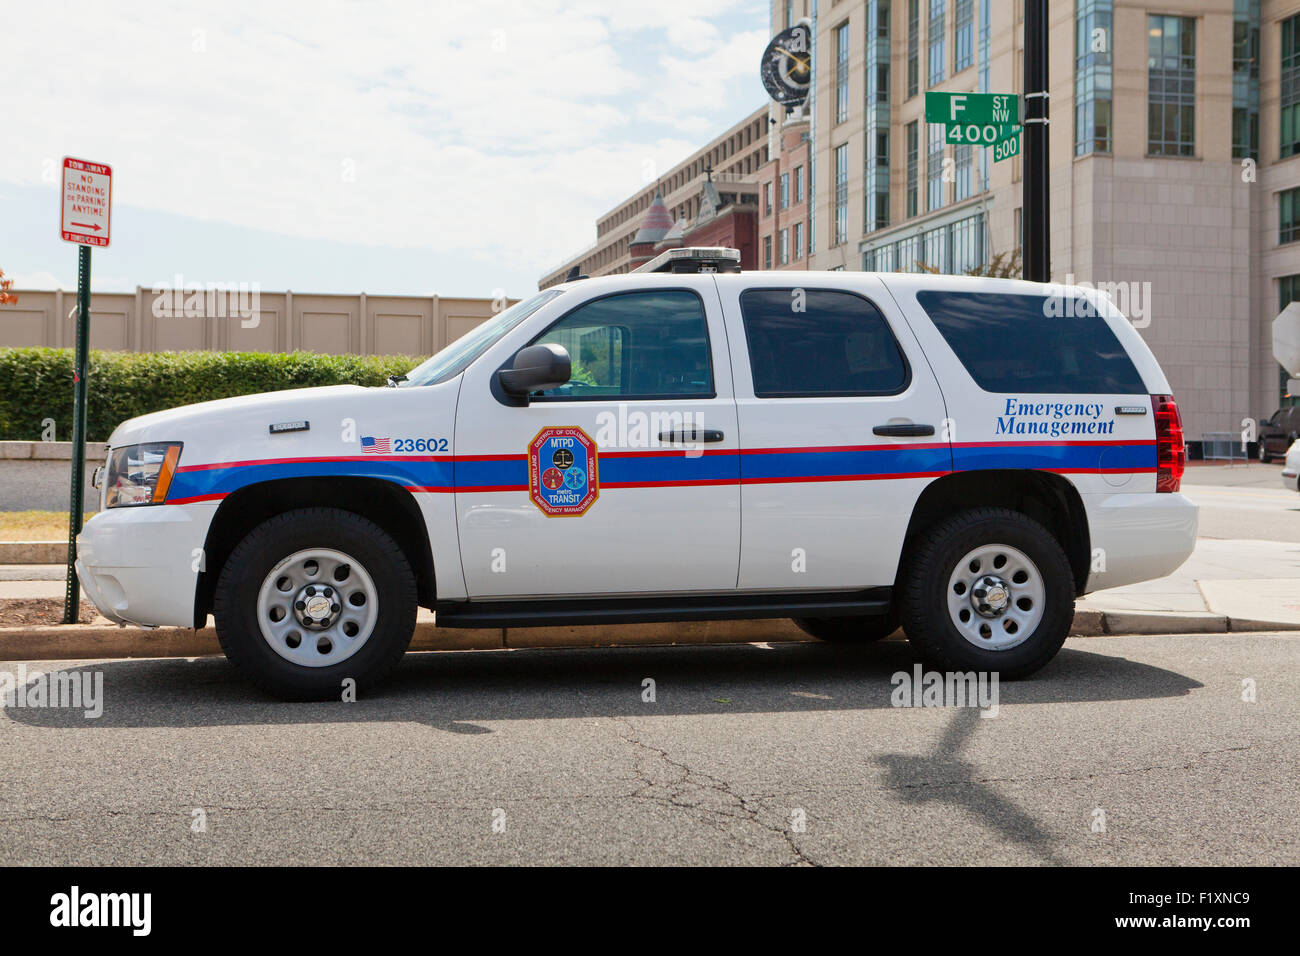 Metro Transit Police Emergency Management vehicle - Washington, DC USA Stock Photo